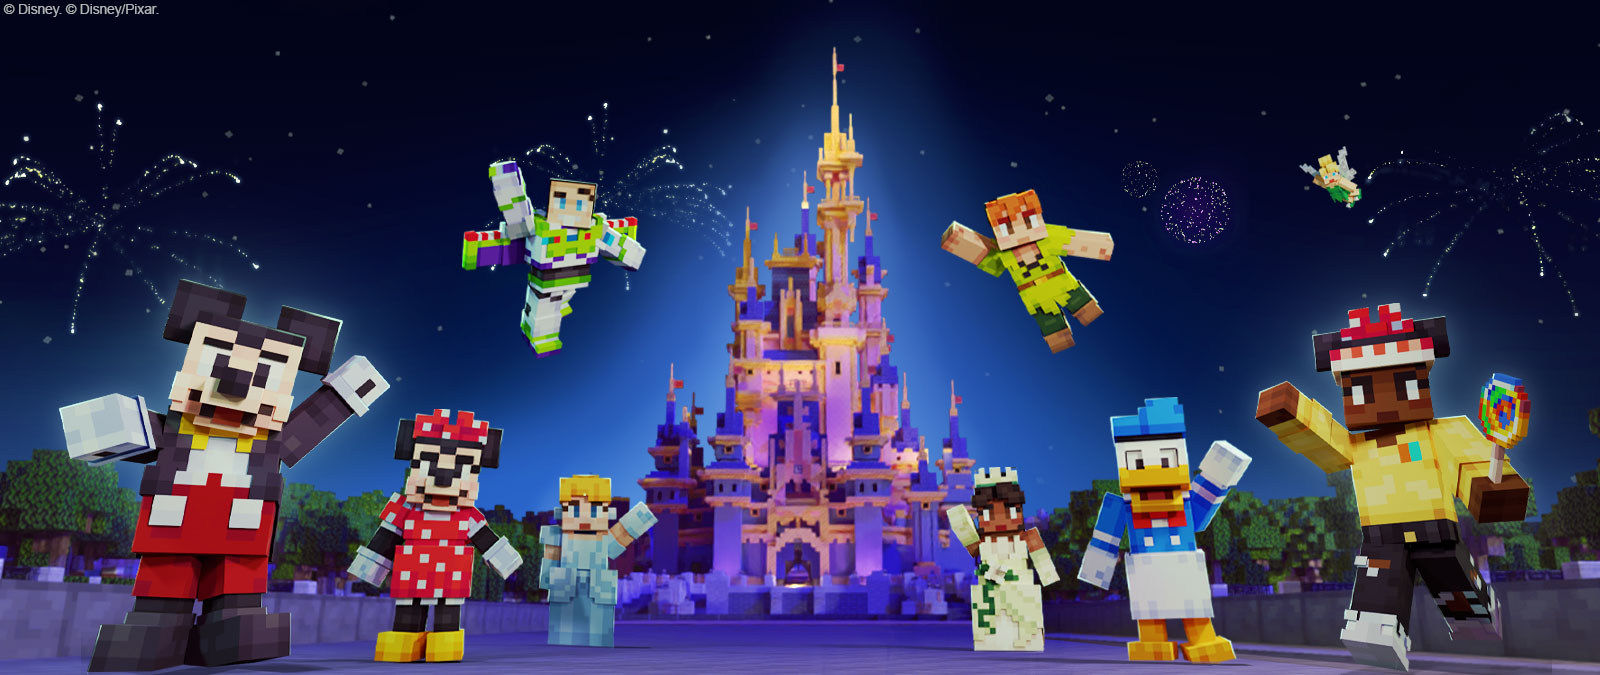 Mickey Mouse, Minnie Mouse, Buzz Lightyear, Cendrillon, Peter Pan, Tiana, Donald Duck, Tinkerbell, et un autre personnage dans le style Minecraft devant le château Disney